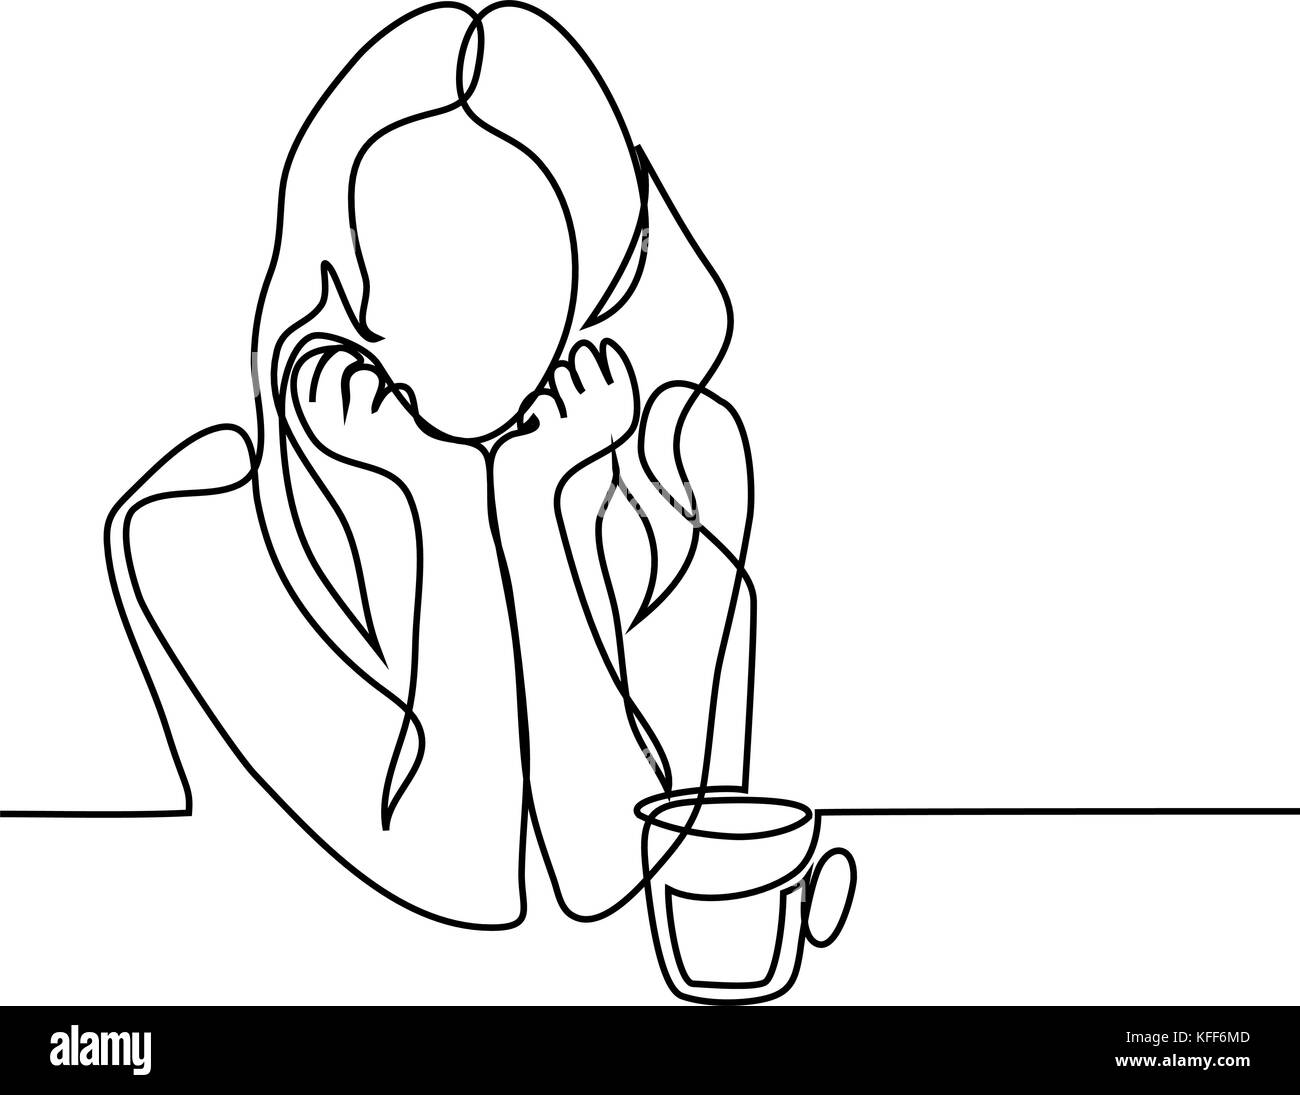 Rappresentazione in linea continua. Abstract il ritratto di una donna con la tazza di tè. Illustrazione Vettoriale. Illustrazione Vettoriale